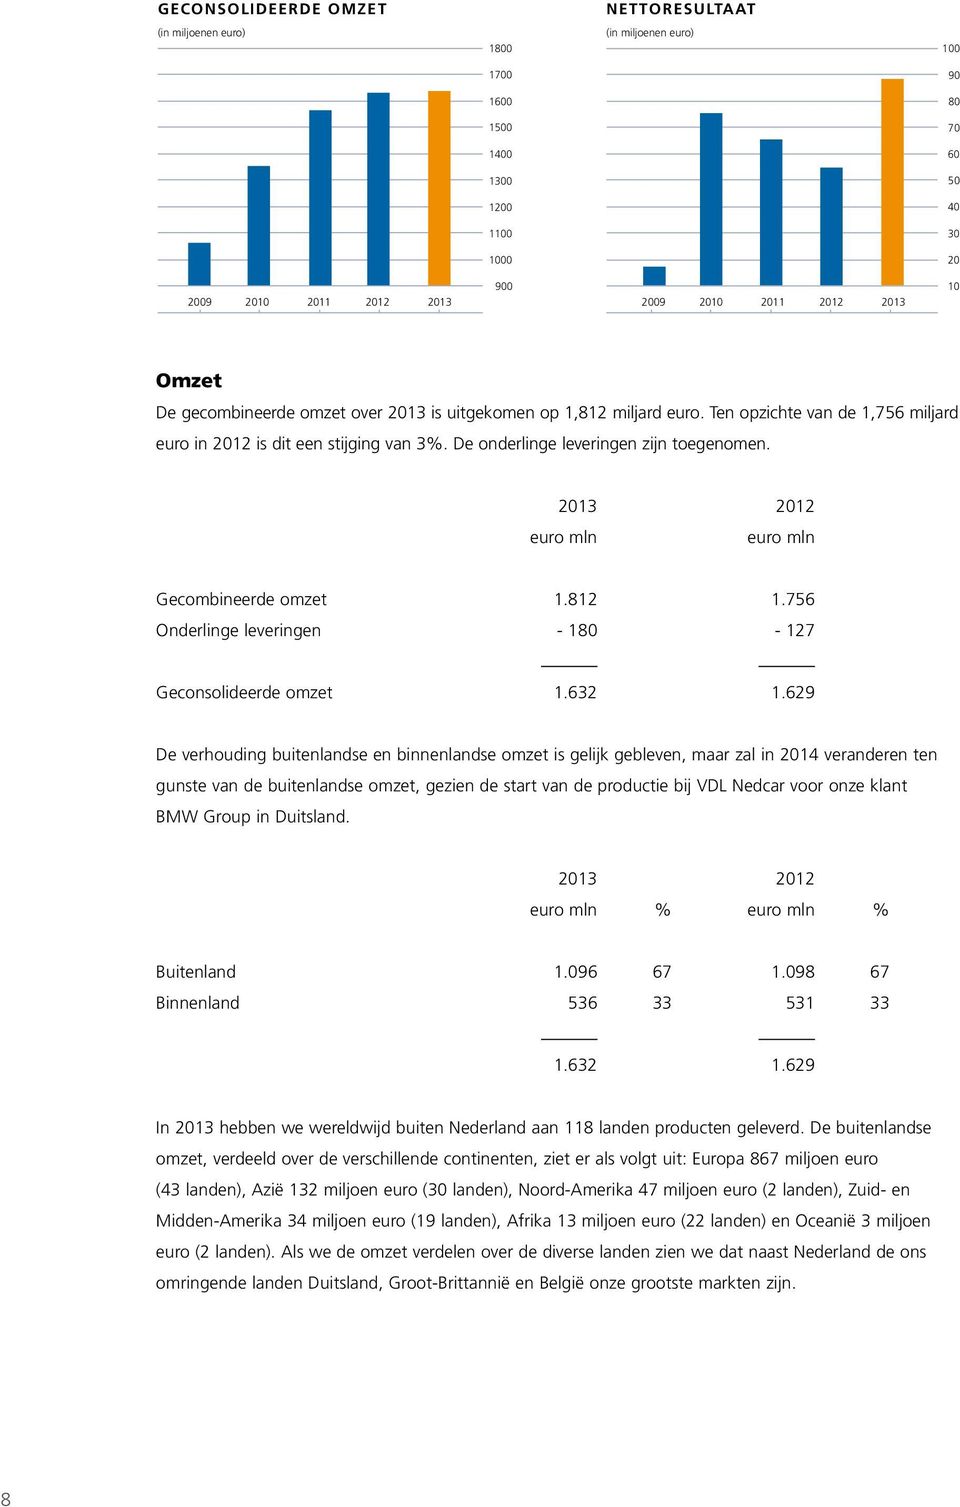 Omzet De gecombineerde omzet over 2013 is uitgekomen op 1,812 miljard euro. Ten opzichte van de 1,756 miljard euro in 2012 is dit een stijging van 3%. De onderlinge leveringen zijn toegenomen.